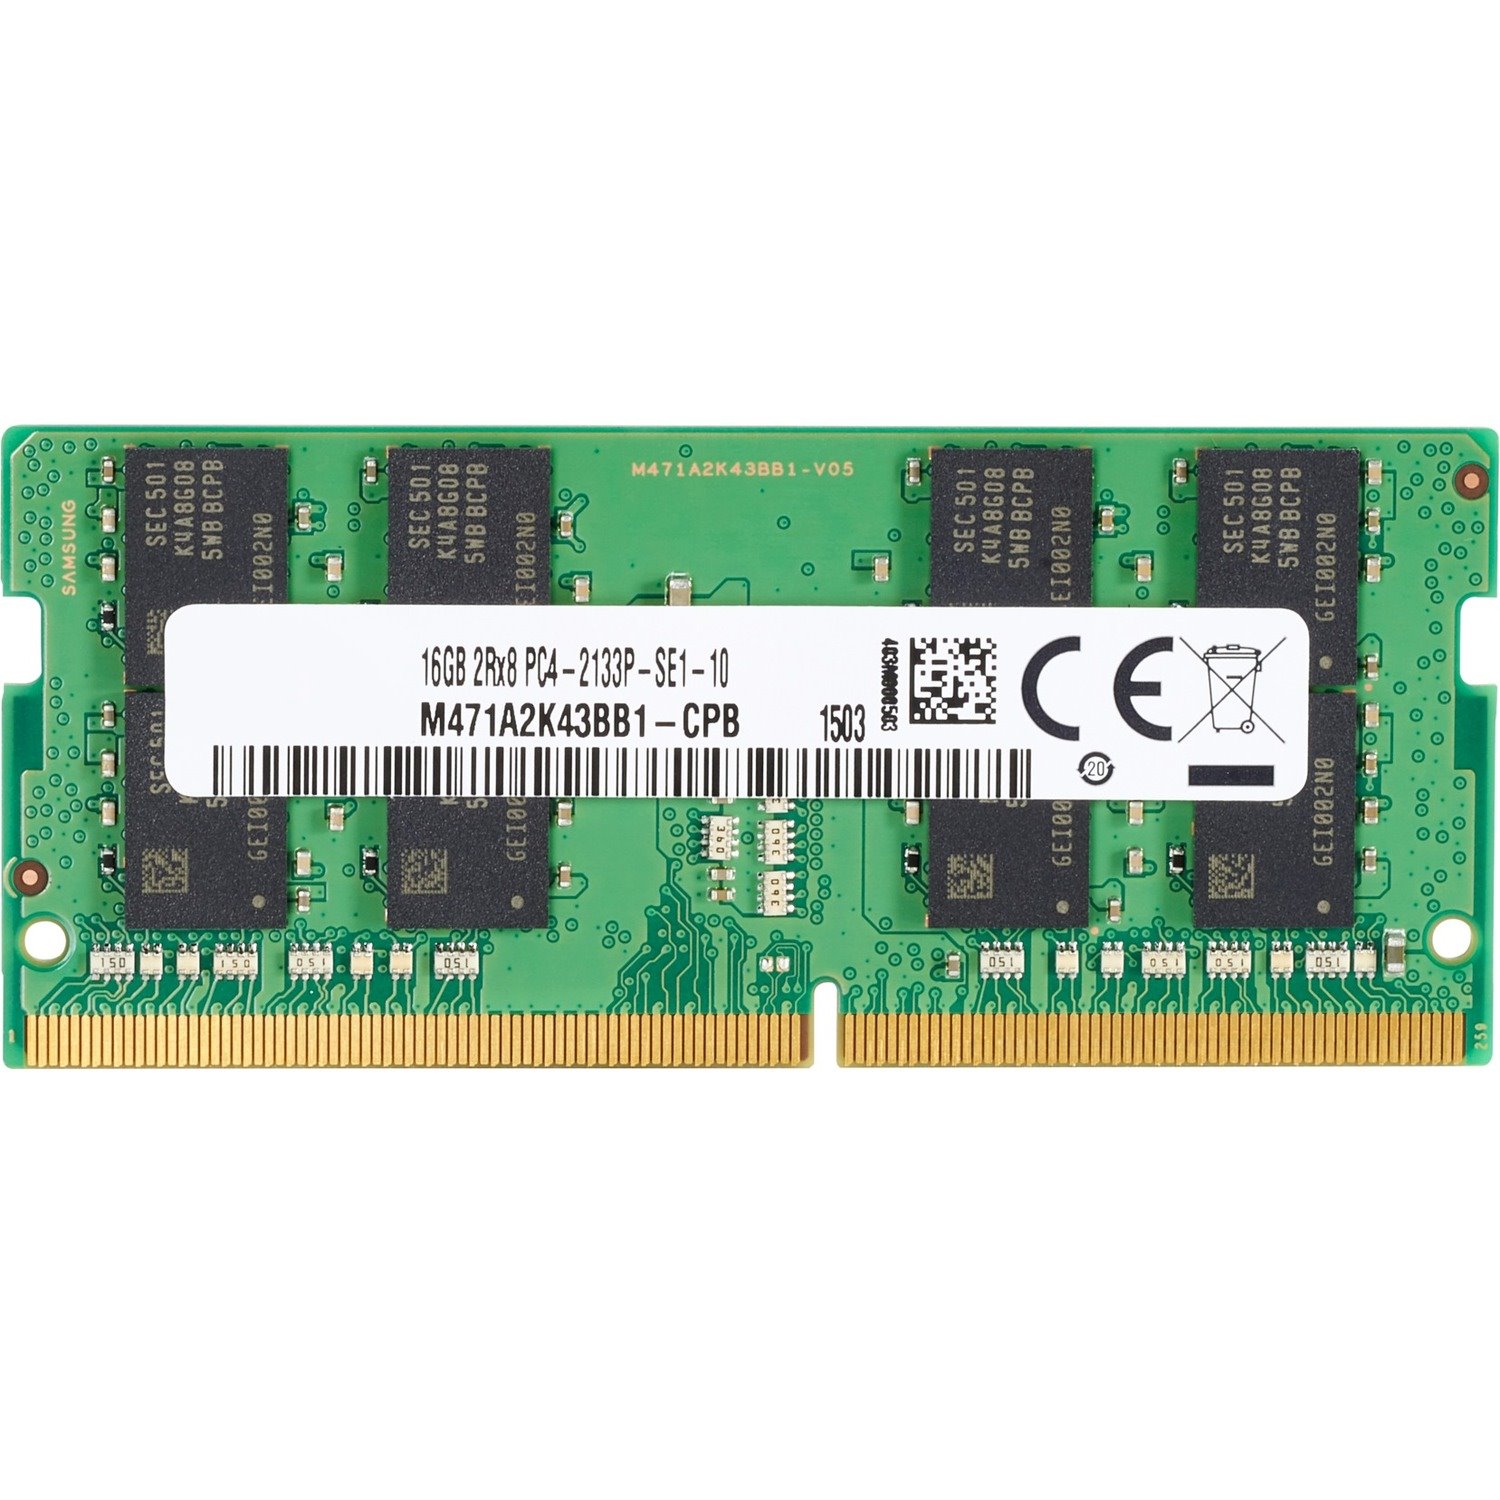 HP RAM Module - 4 GB (1 x 4GB) - DDR4-2666/PC4-21300 DDR4 SDRAM - 2666 MHz - 1.20 V